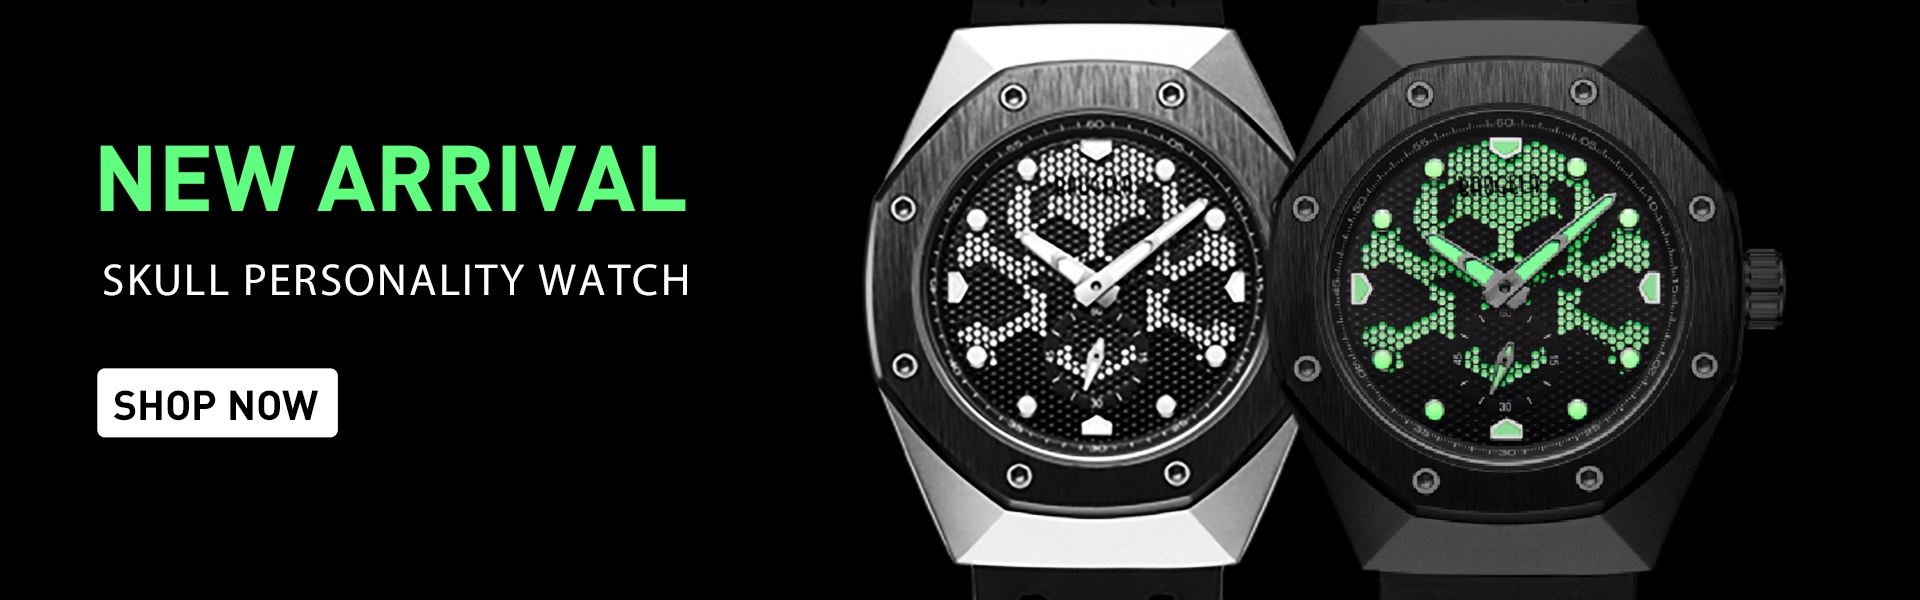 watch,watch oem,watch brand,Shenzhen BAOGELA Technology Co.,ltd.